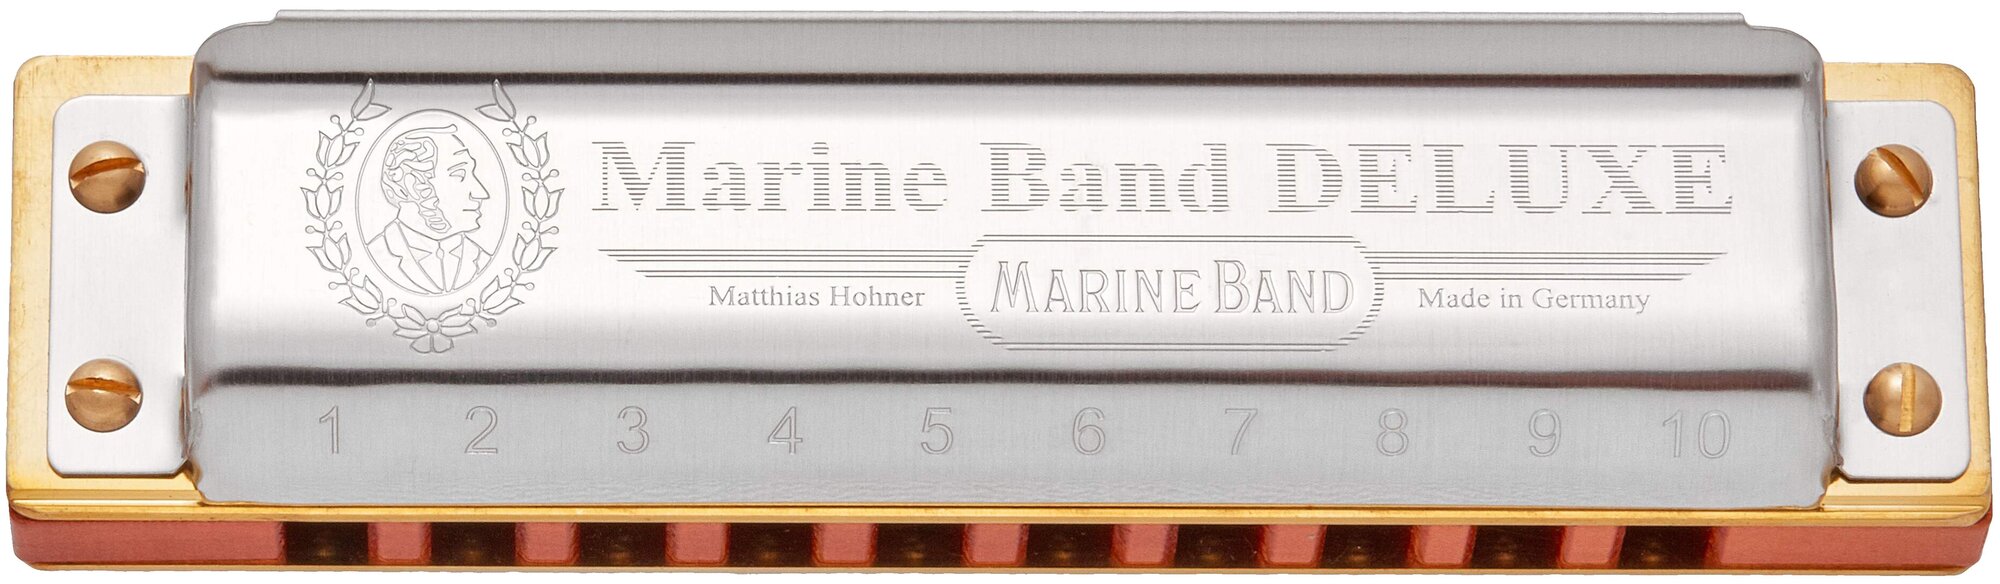 HOHNER Marine Band Deluxe 2005/20 Eb Губная гармоника диатоническая